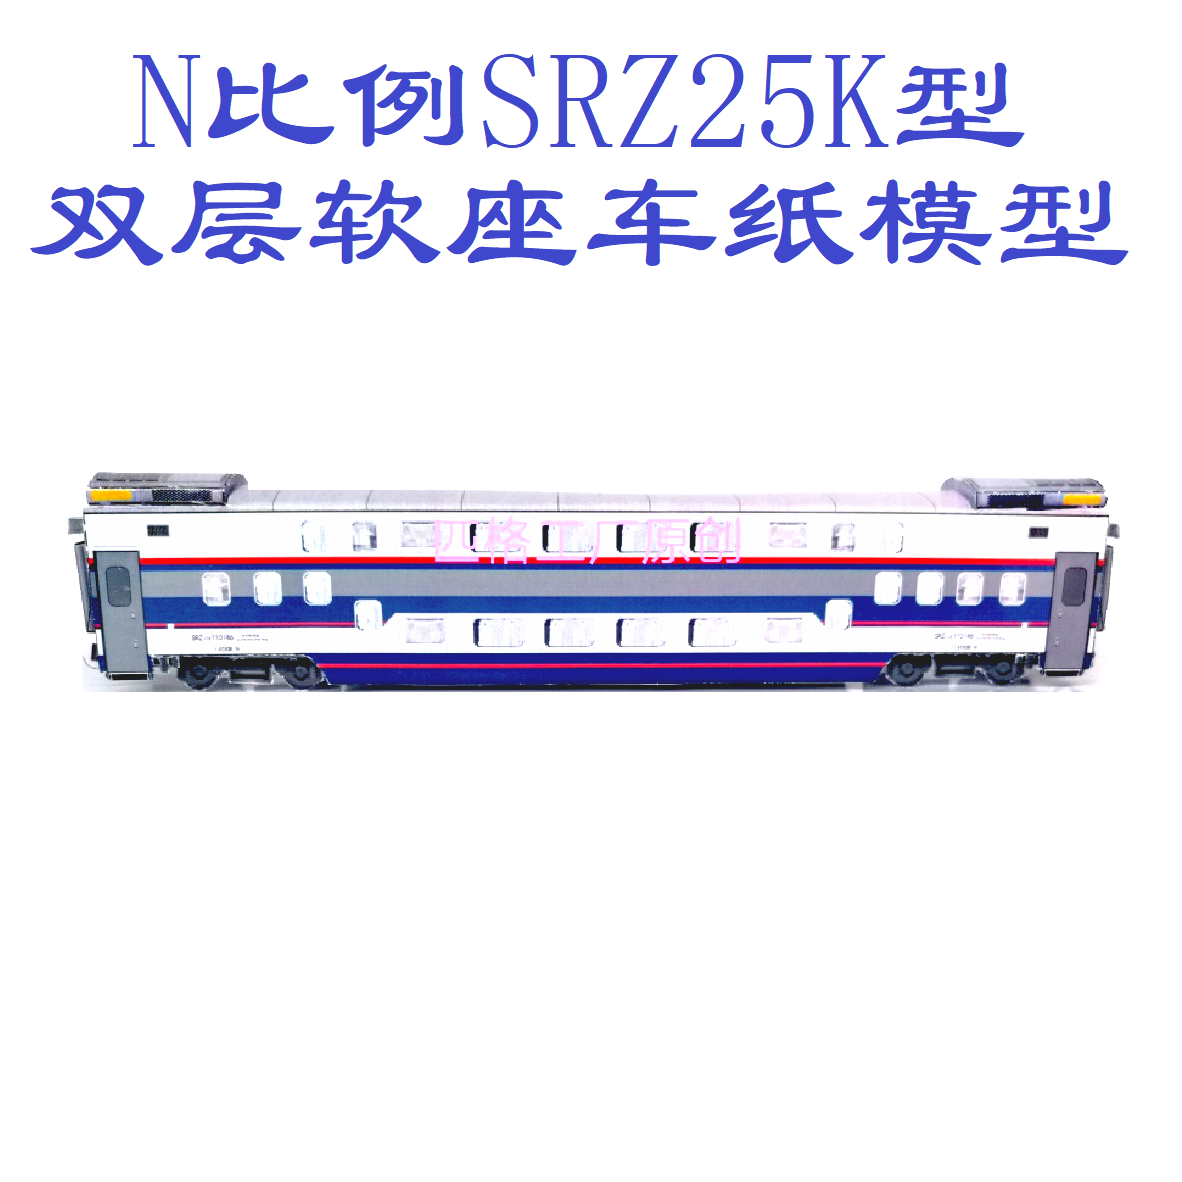 匹格工厂N比例SRZ25K型双层软座车模型3D纸模DIY手工双层火车模型